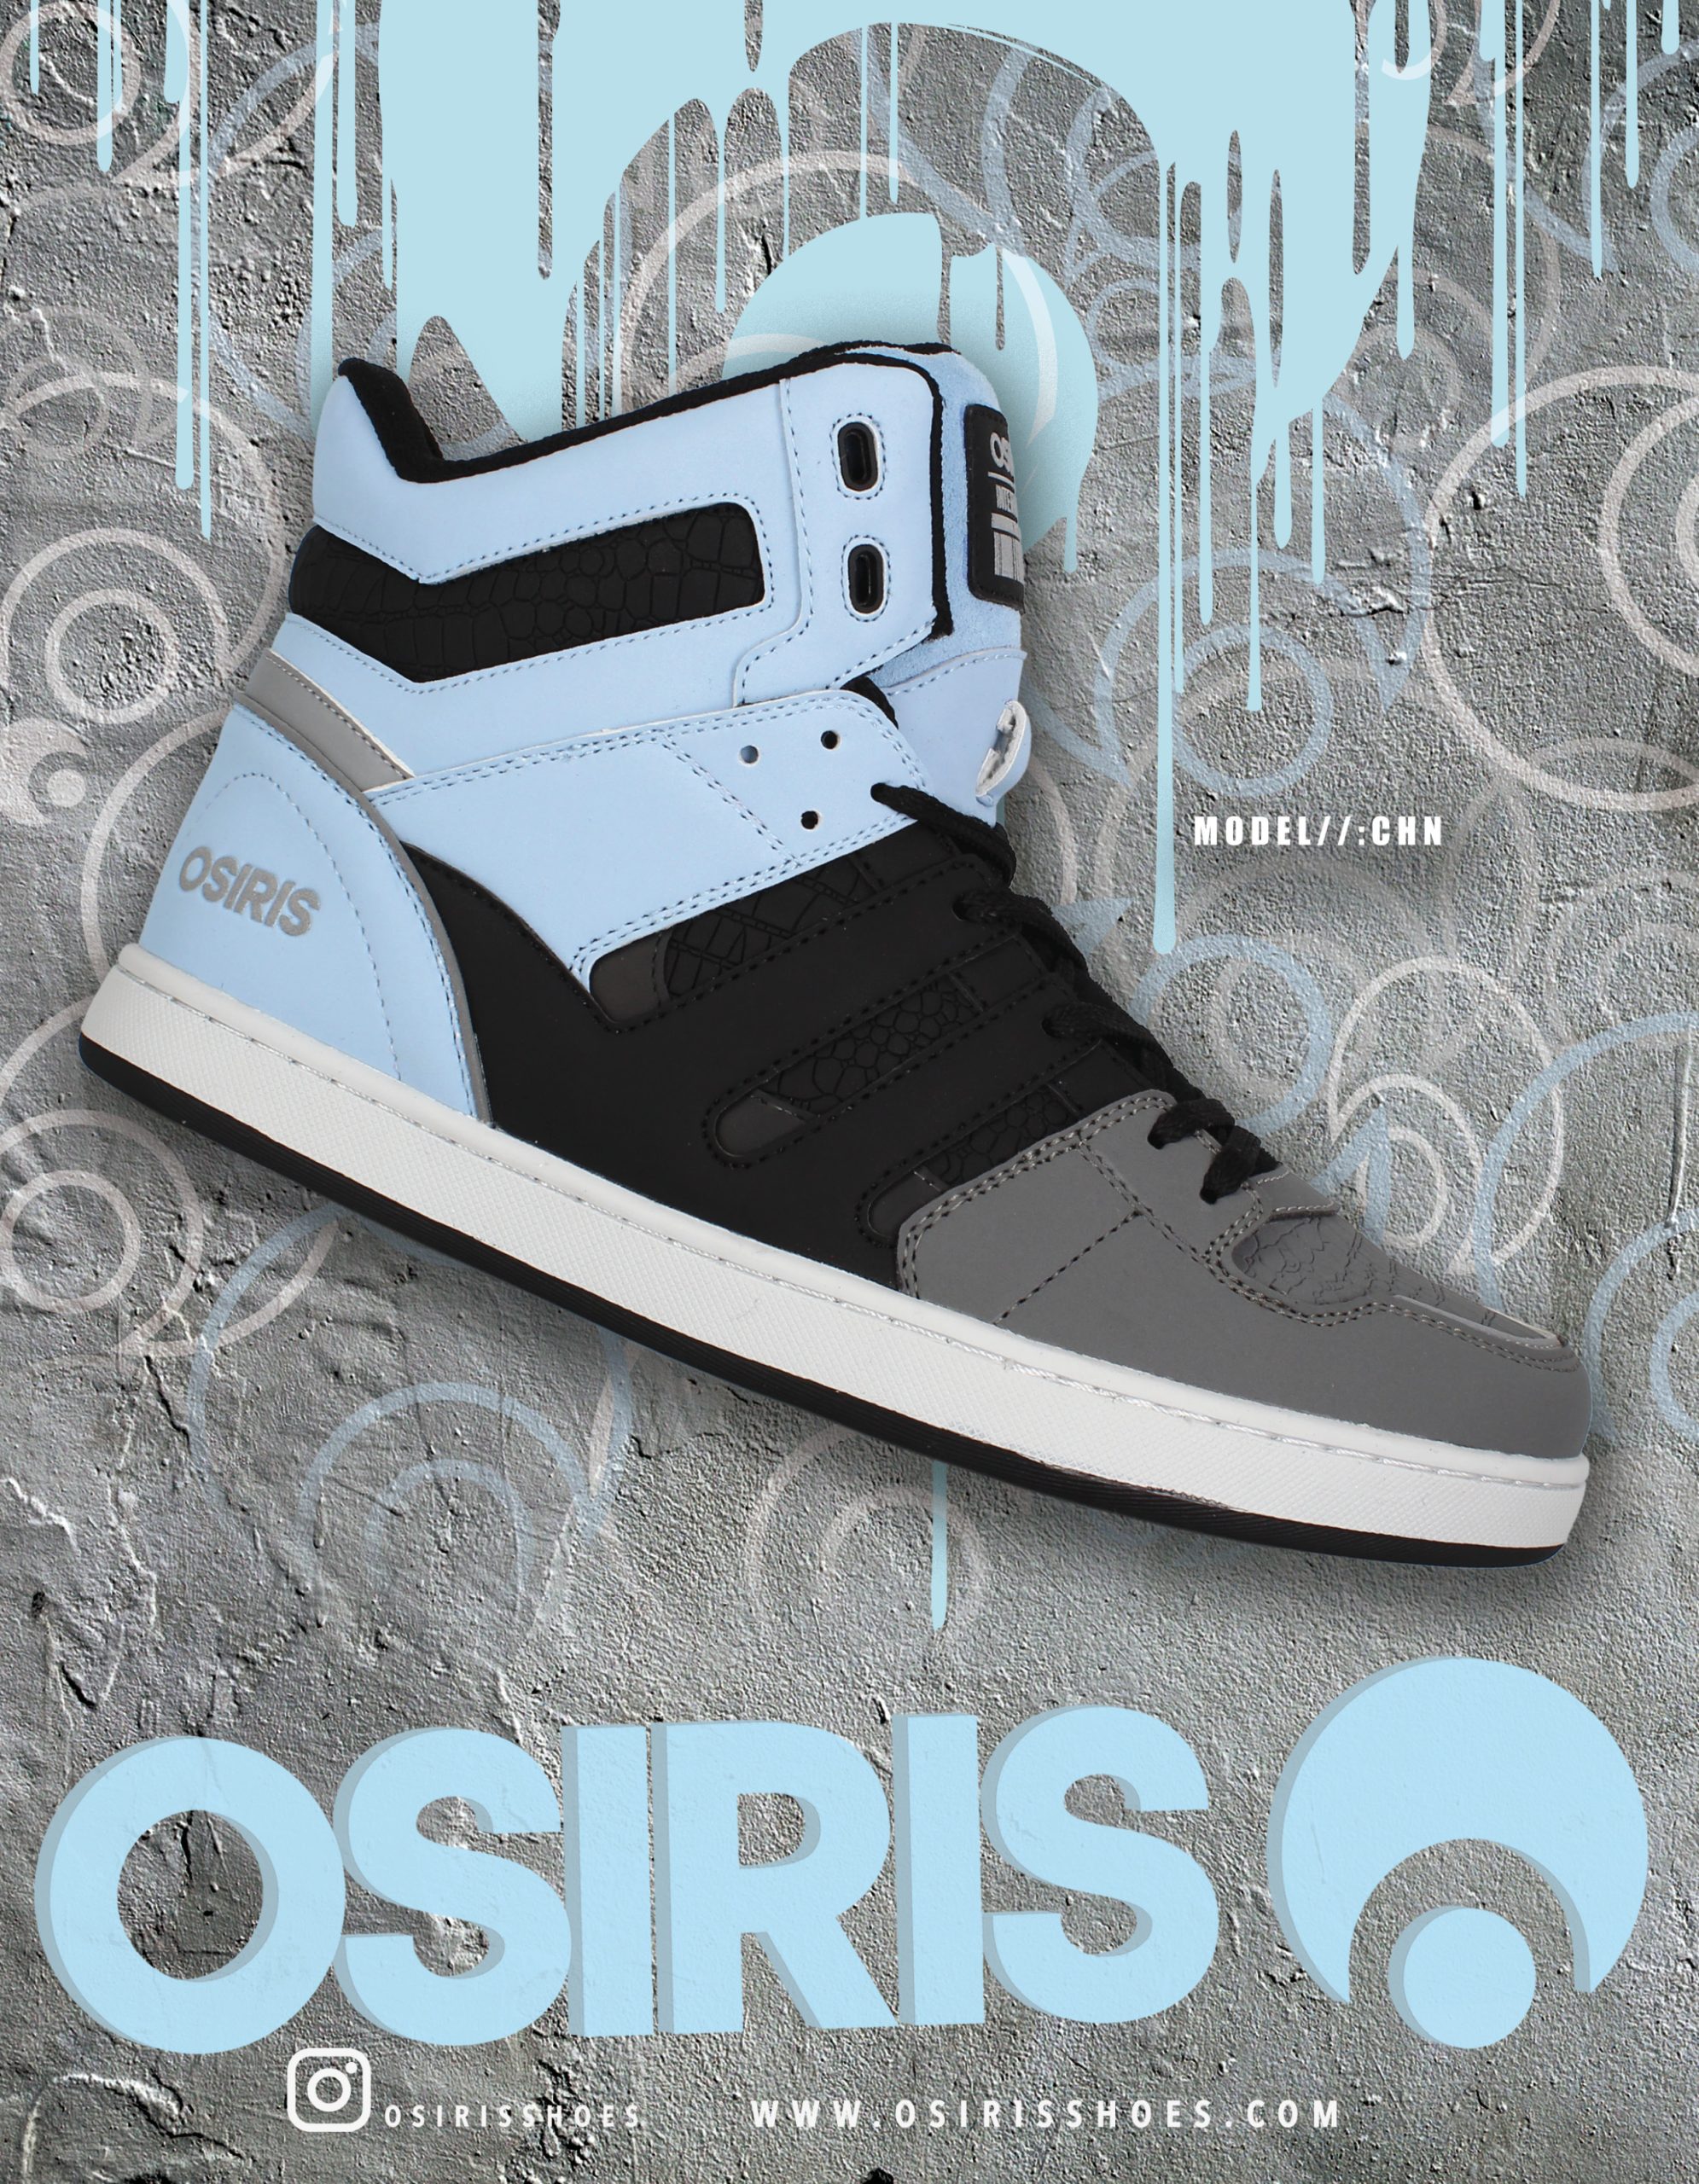 117 Osiris skate shoes